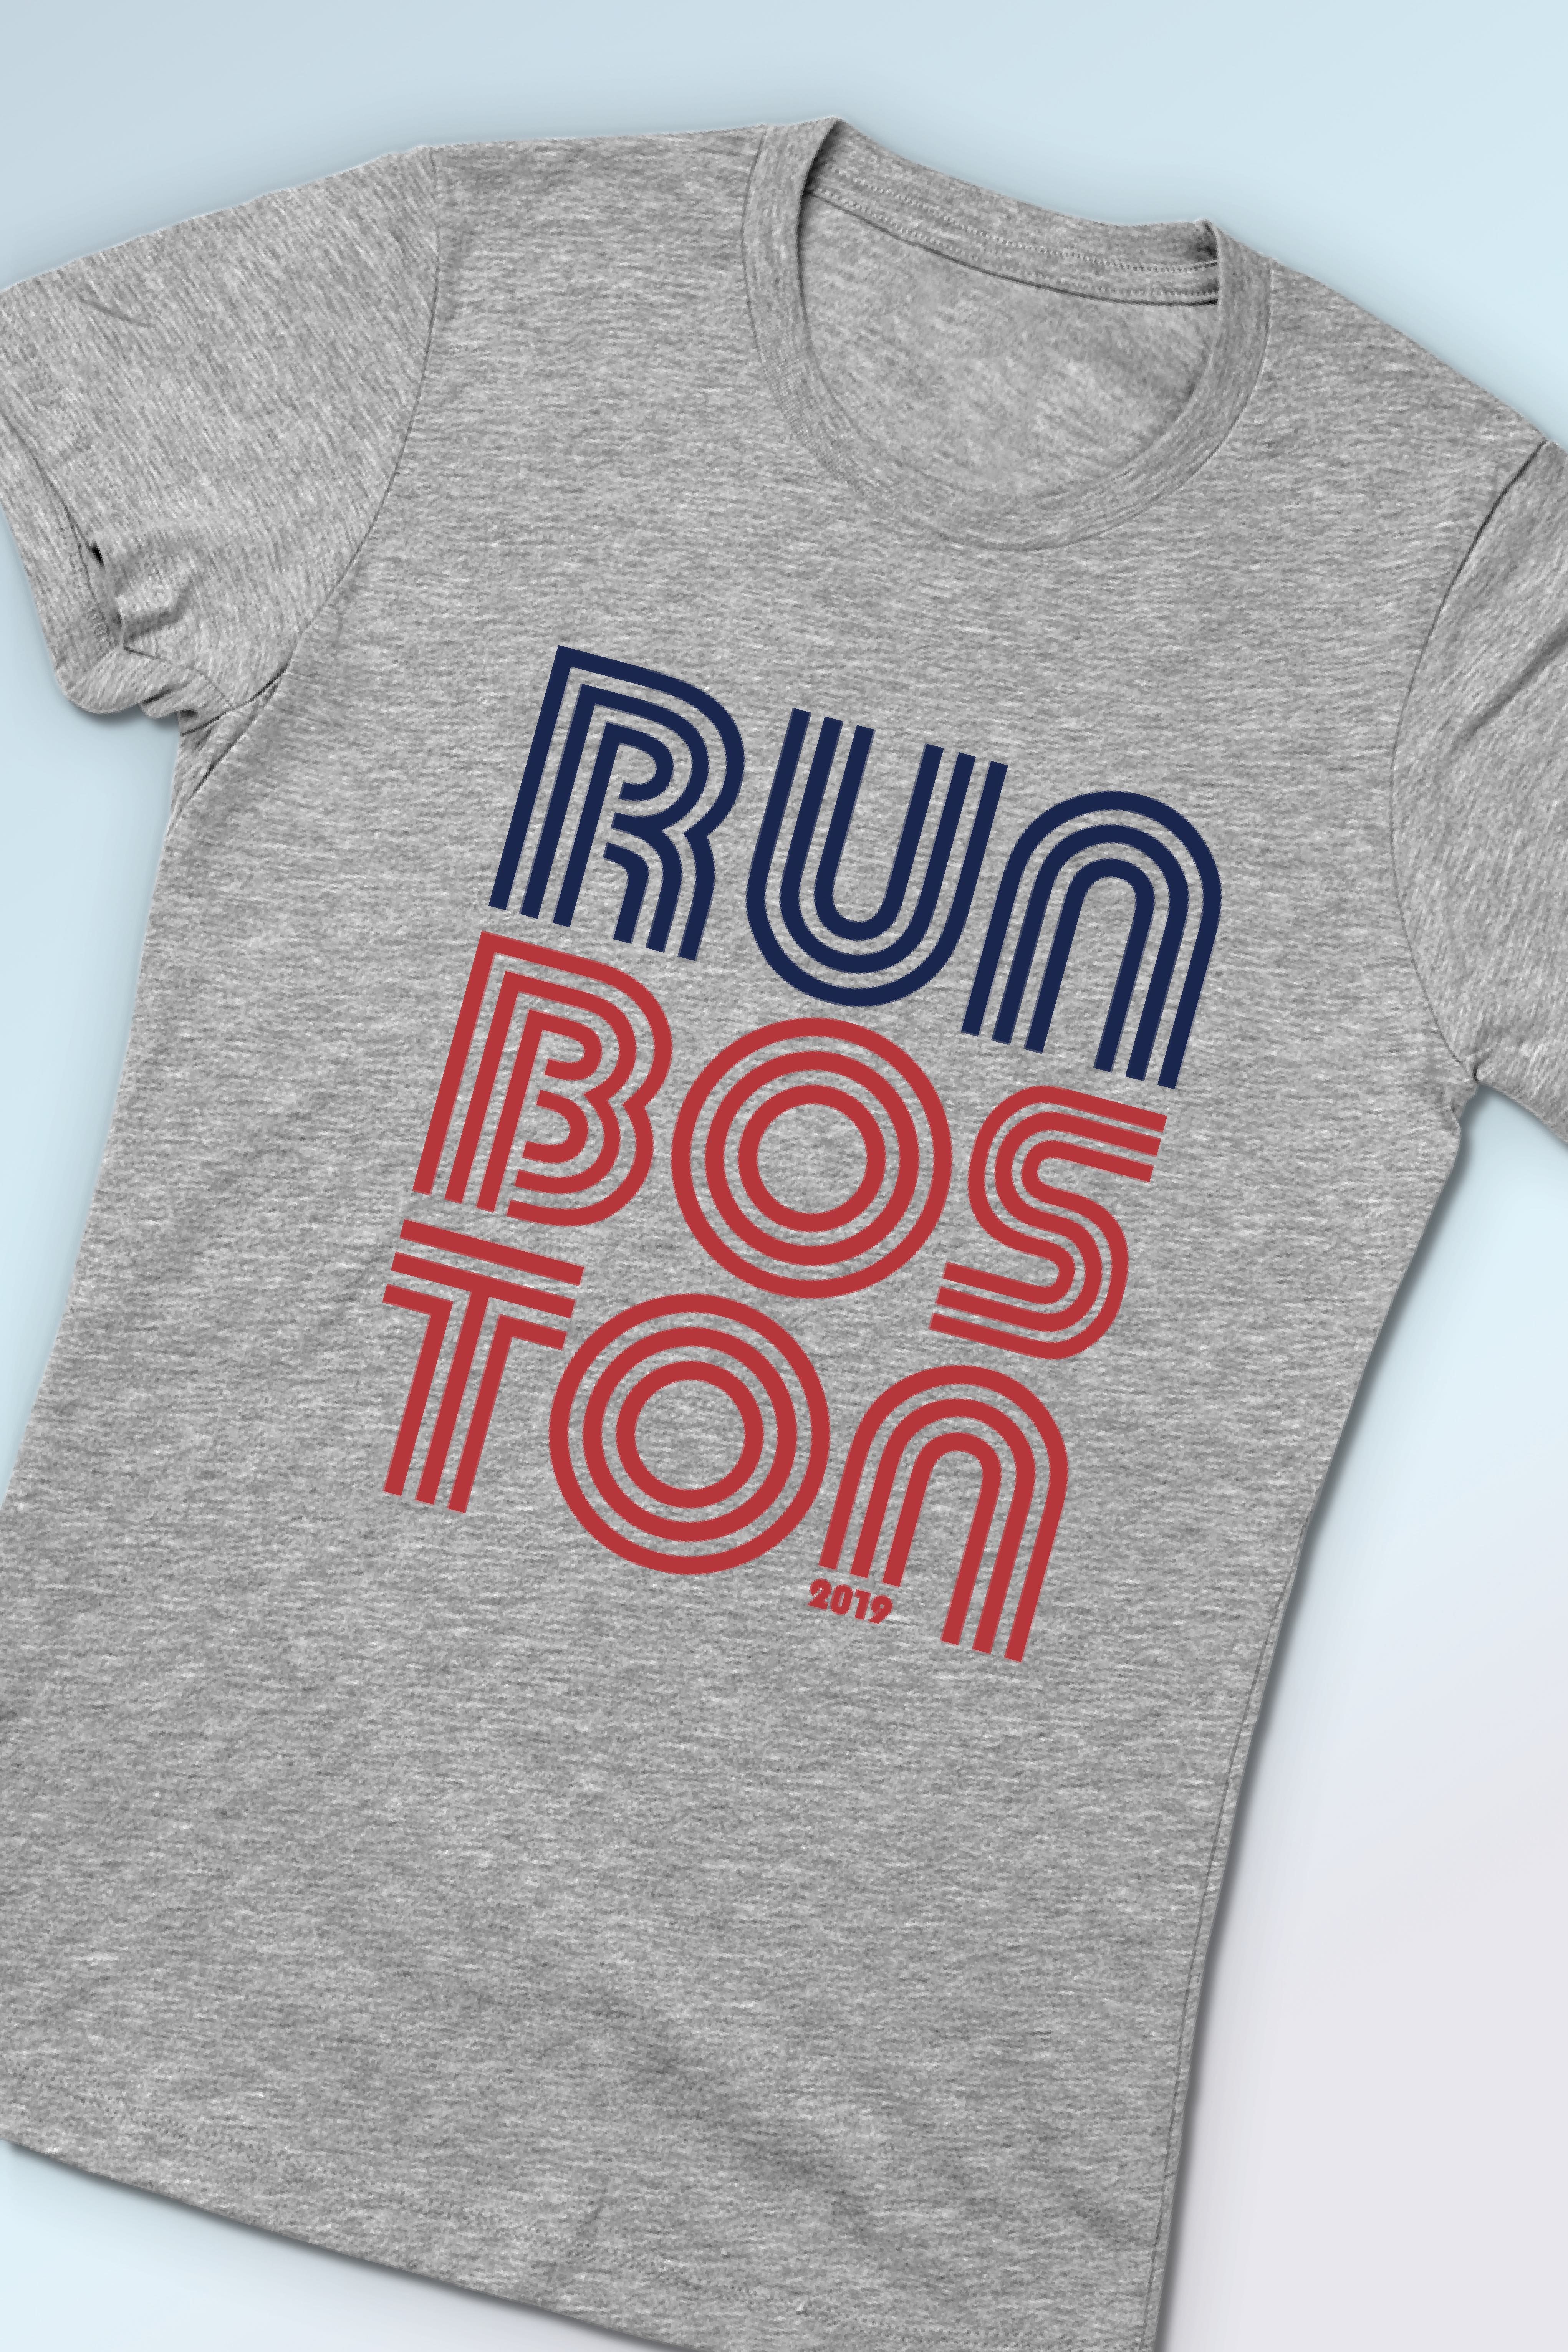 Run Boston T-Shirt - Gray